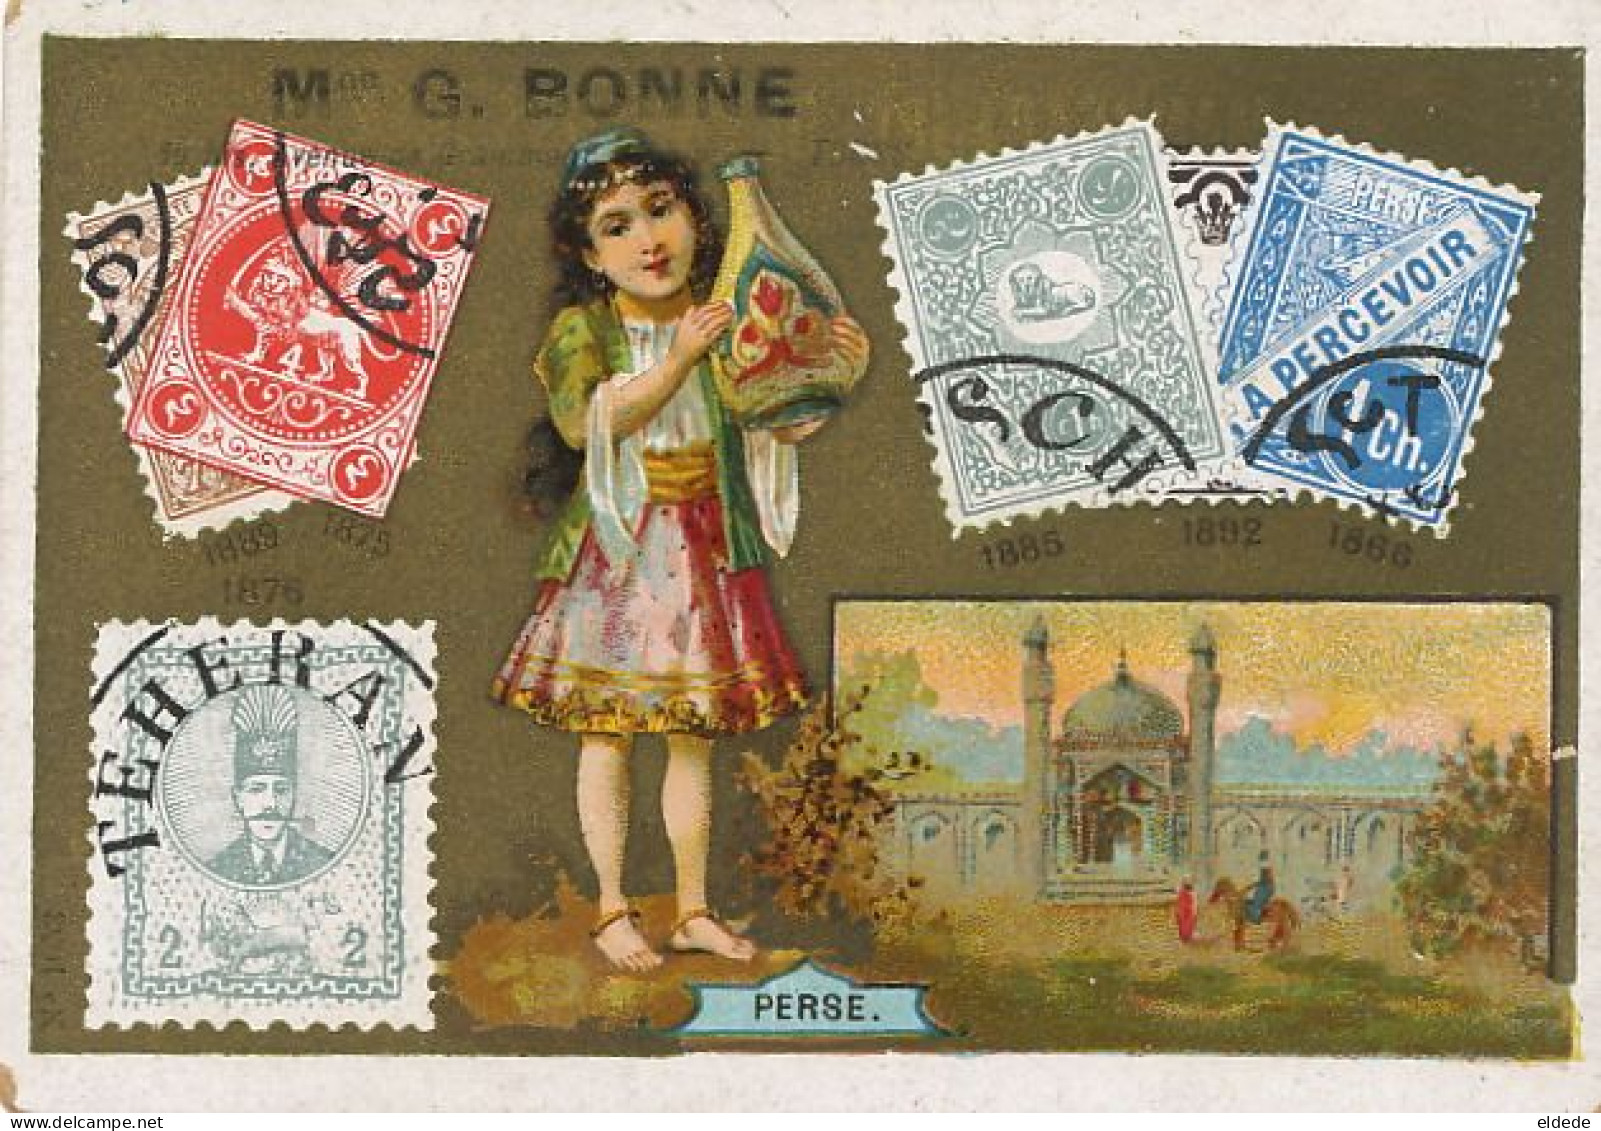 Chromo Perse Persia Iran  With Prints Of Persia Stamps Pub Bonne Tours - Iran